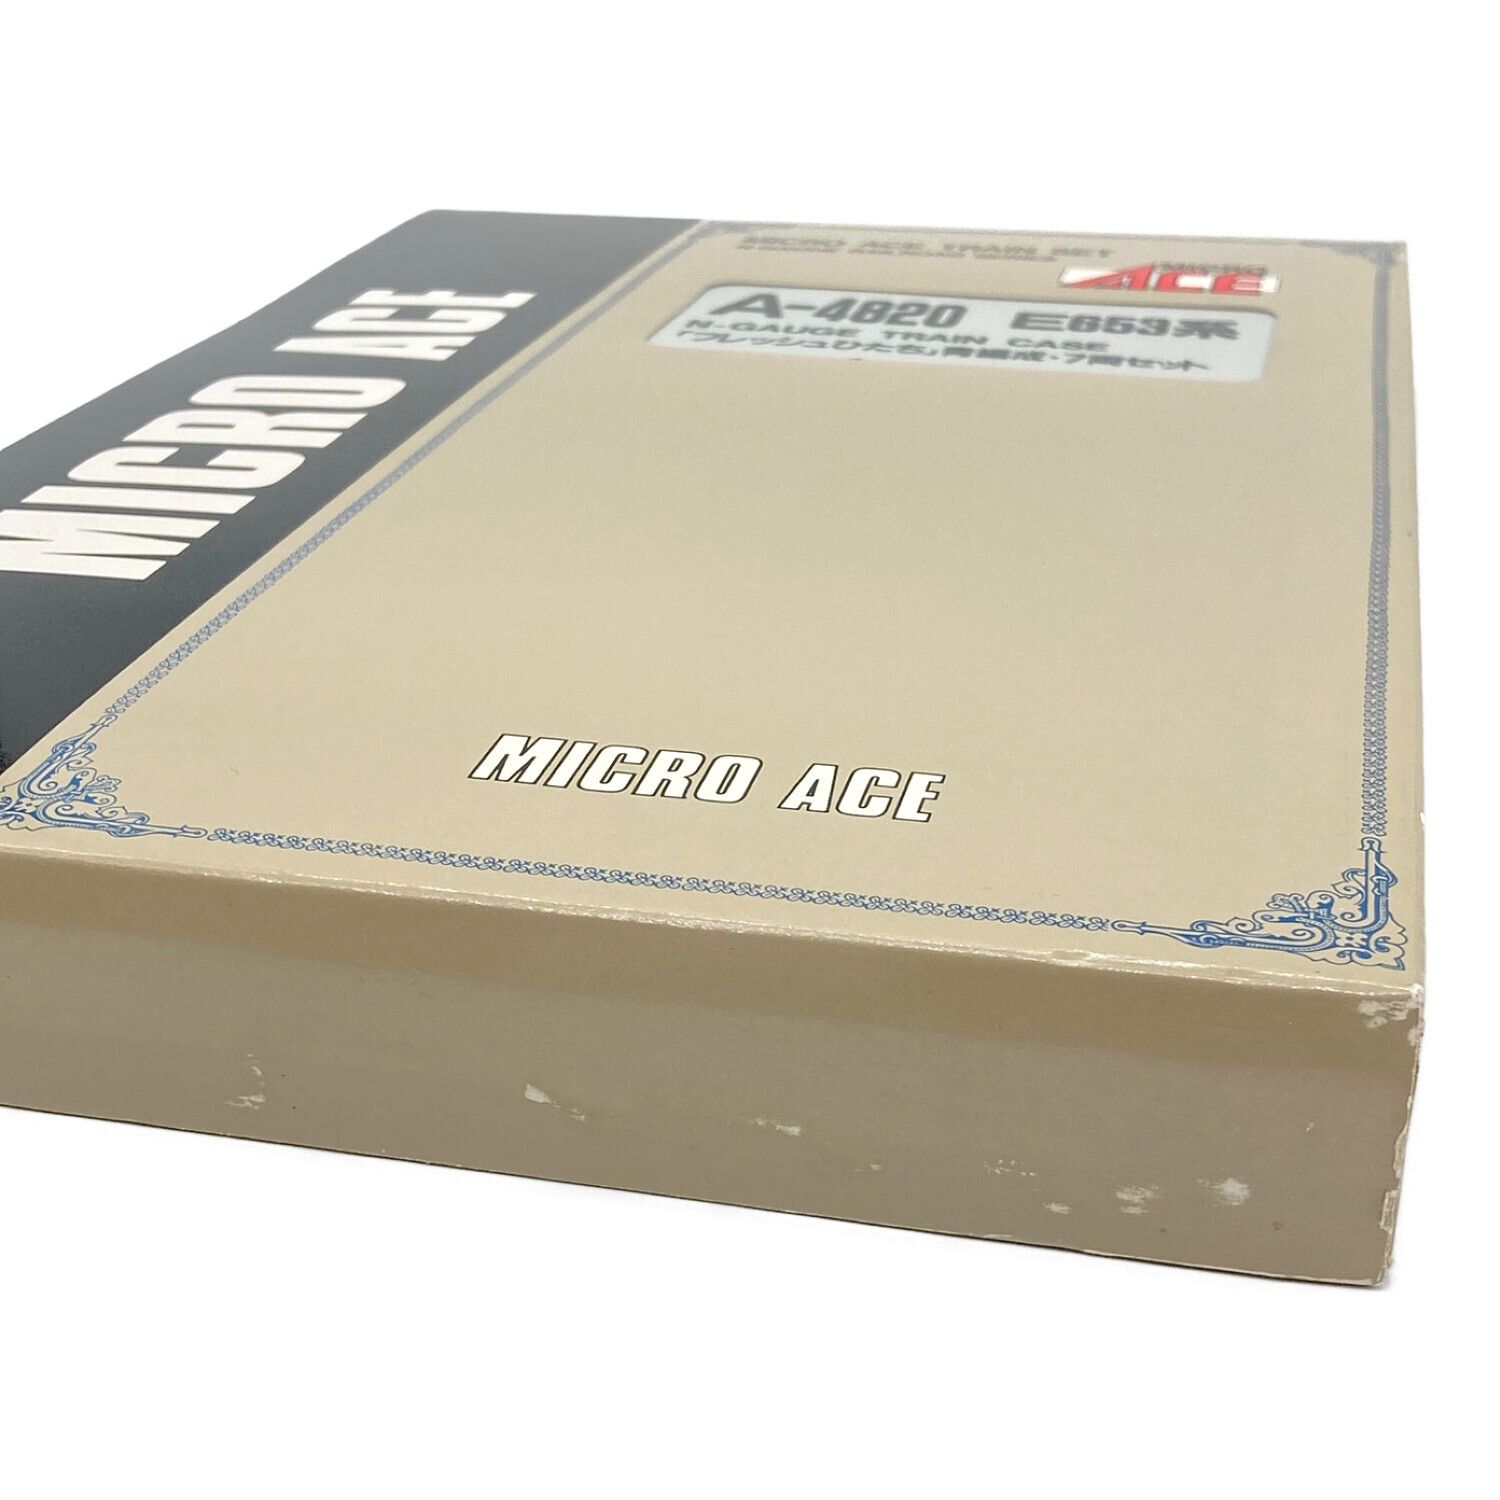 MICRO ACE (マイクロエース) Nゲージ E653系 『フレッシュひたち』青 ...